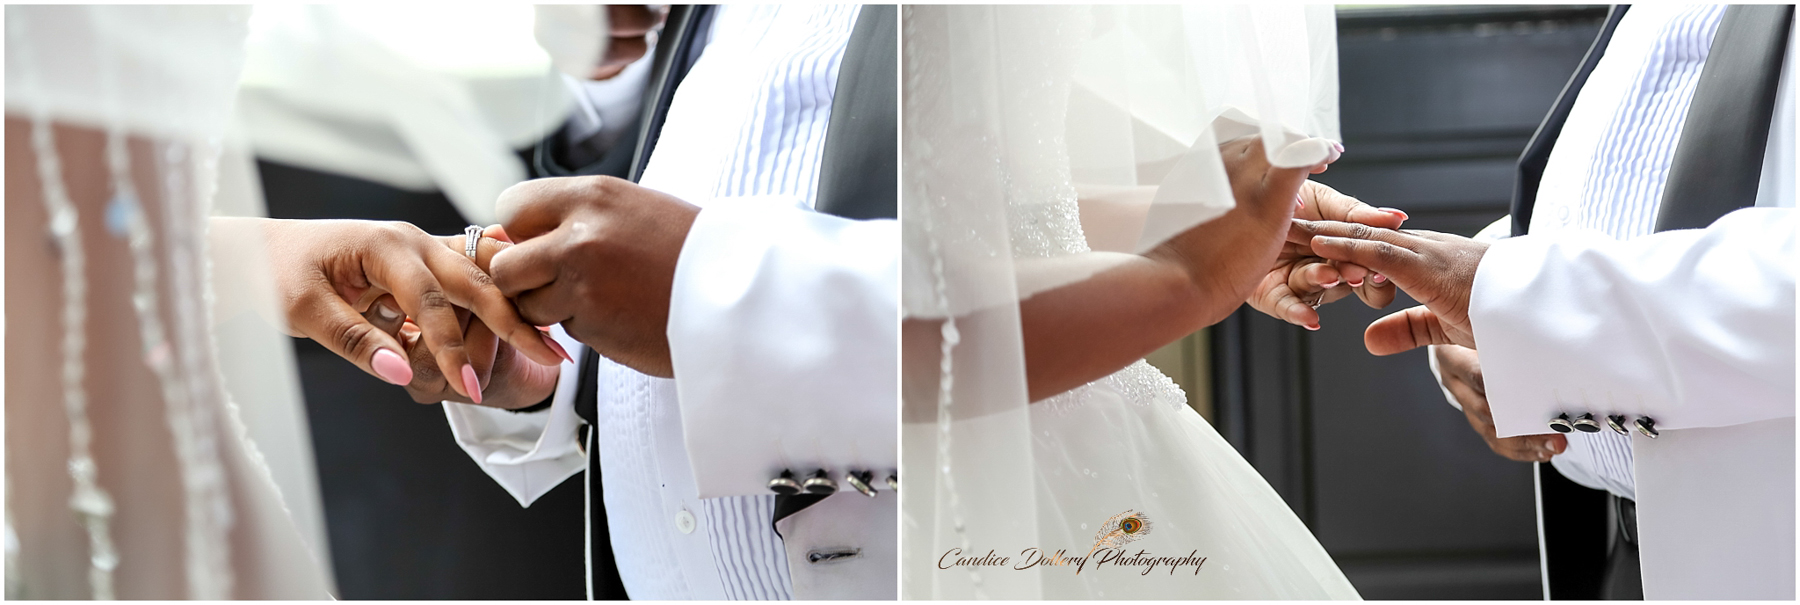 Inkwenkwezi wedding - Candice Dollery Photography_4002